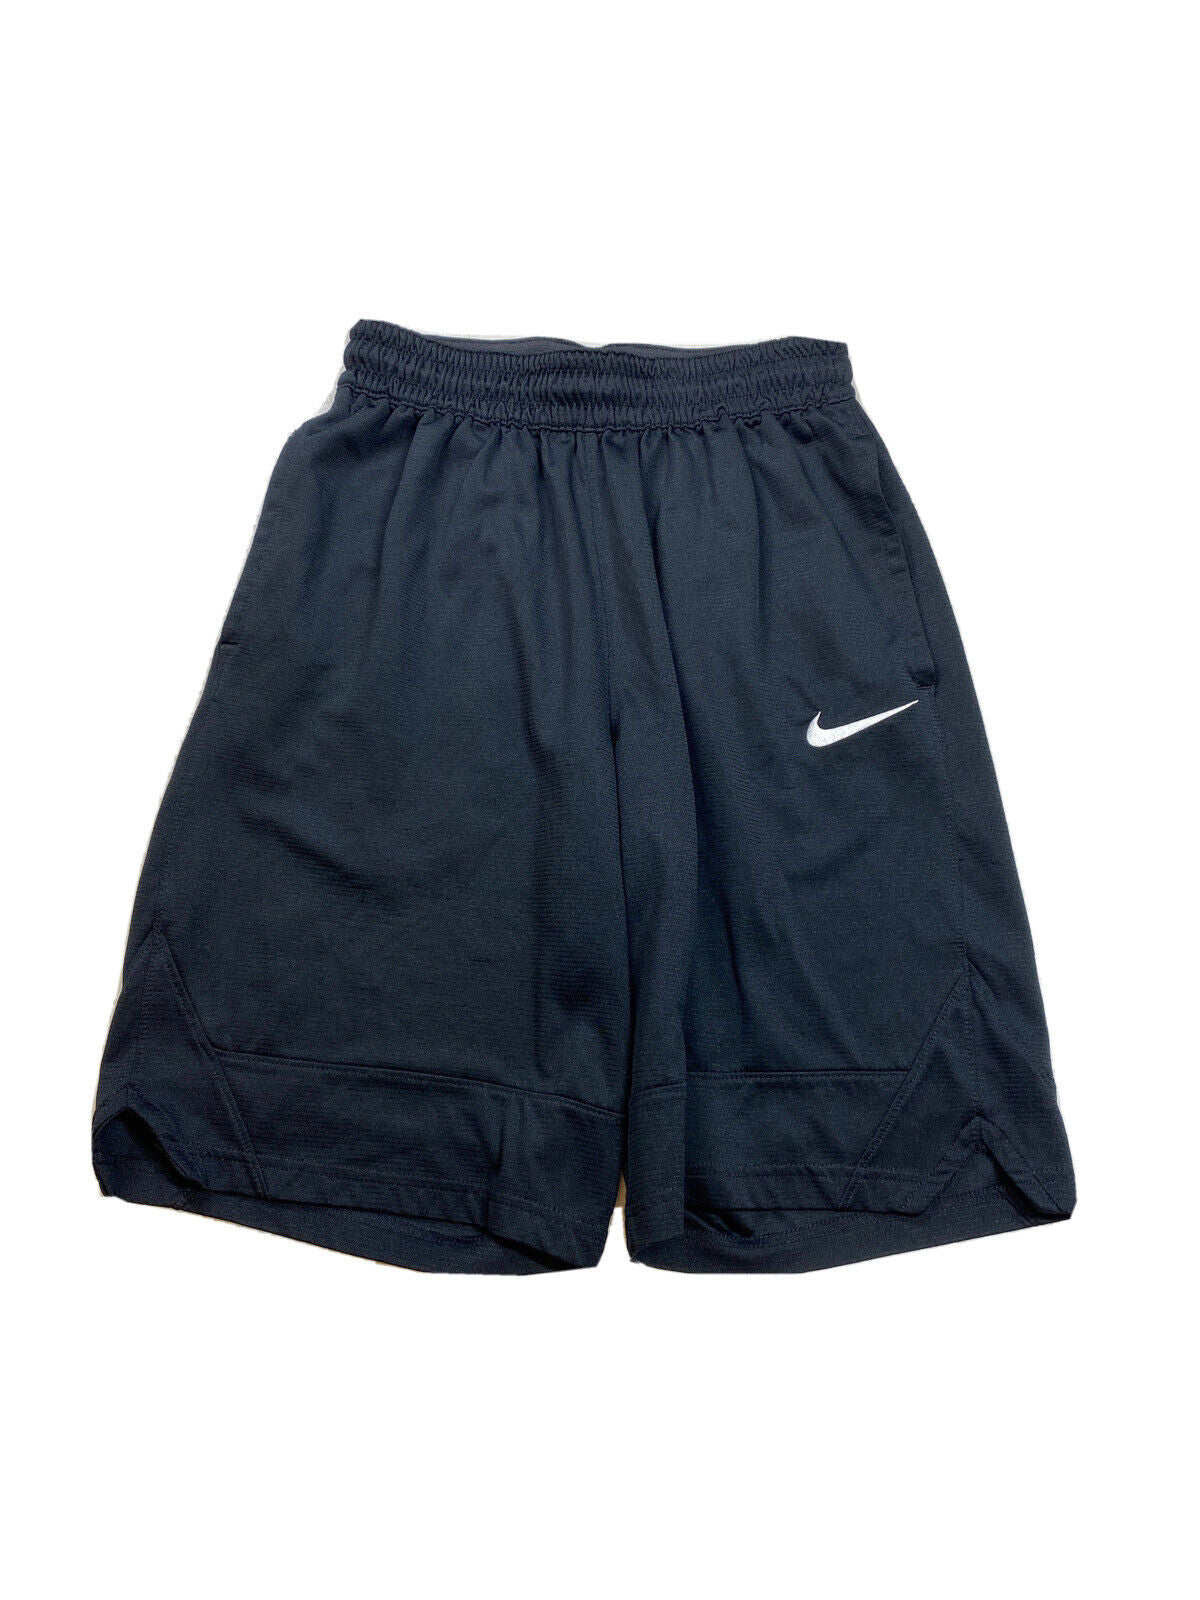 Nike Men's Black Dri-Fit Athletic Basketball Shorts - S